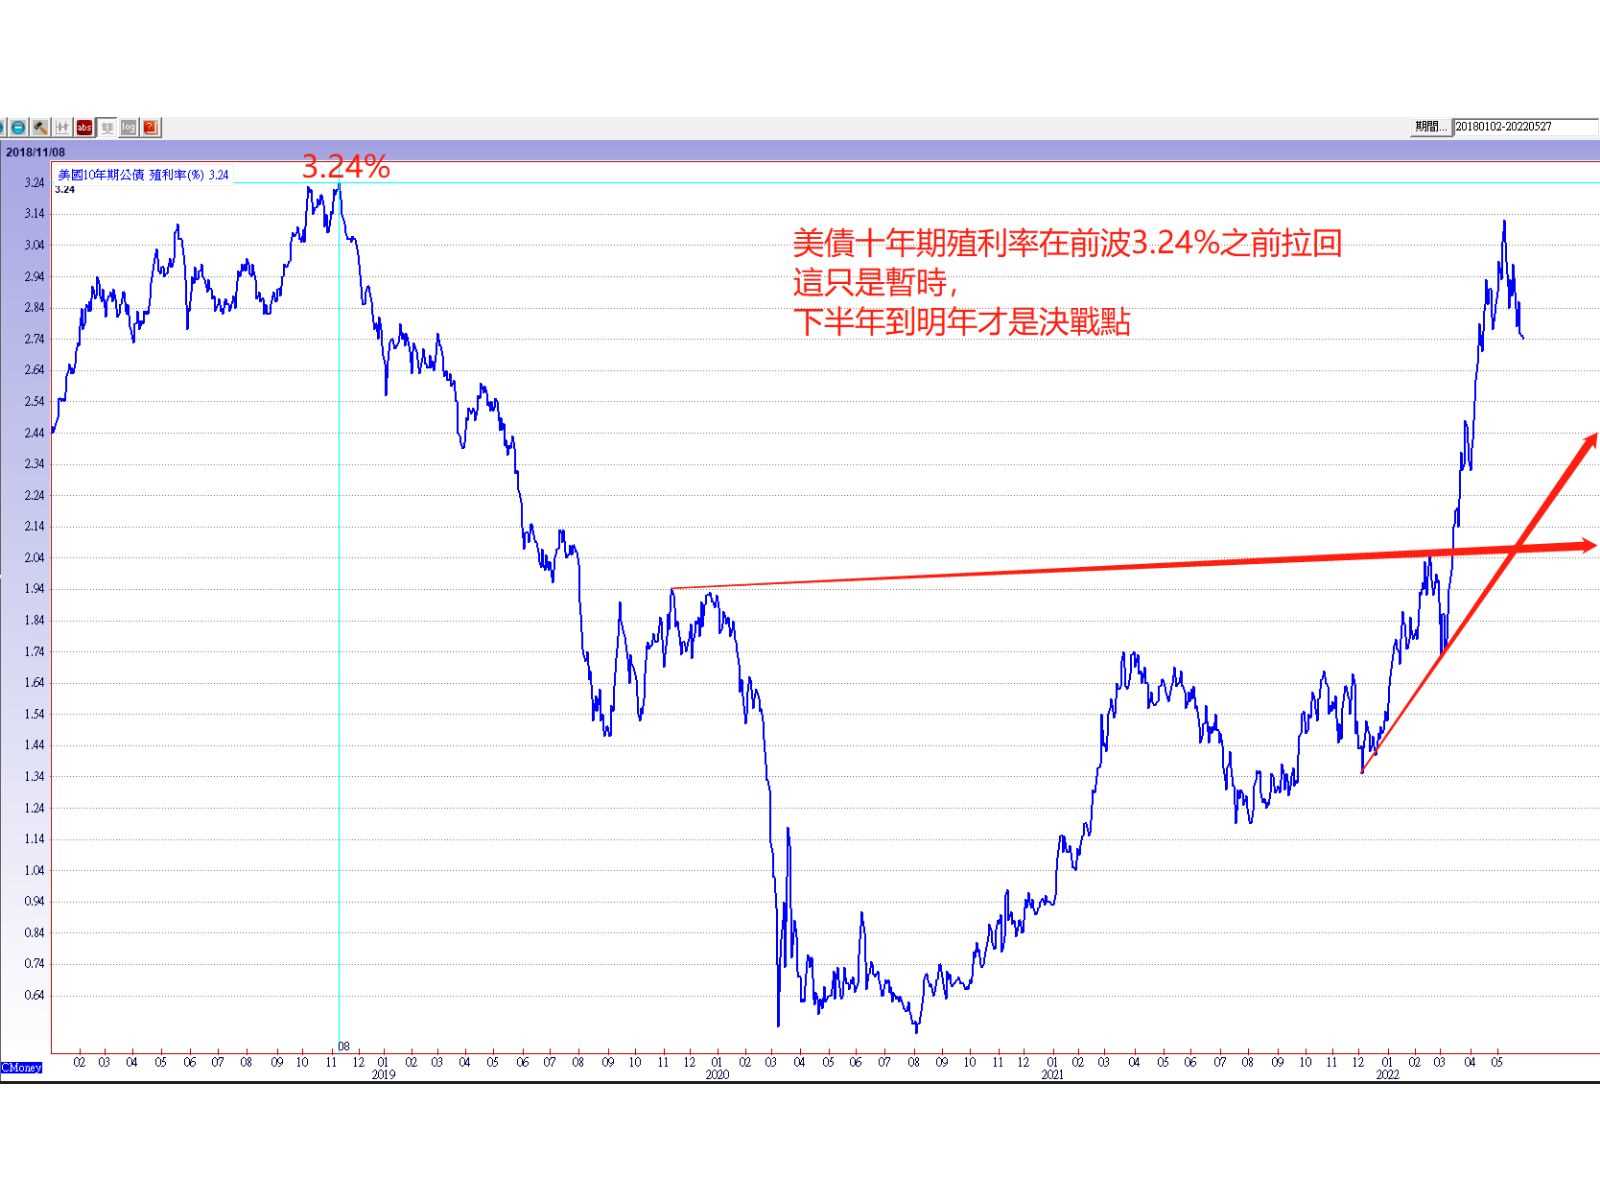 通膨舒緩，美債殖利率回落，上海解封，科技股反彈主角